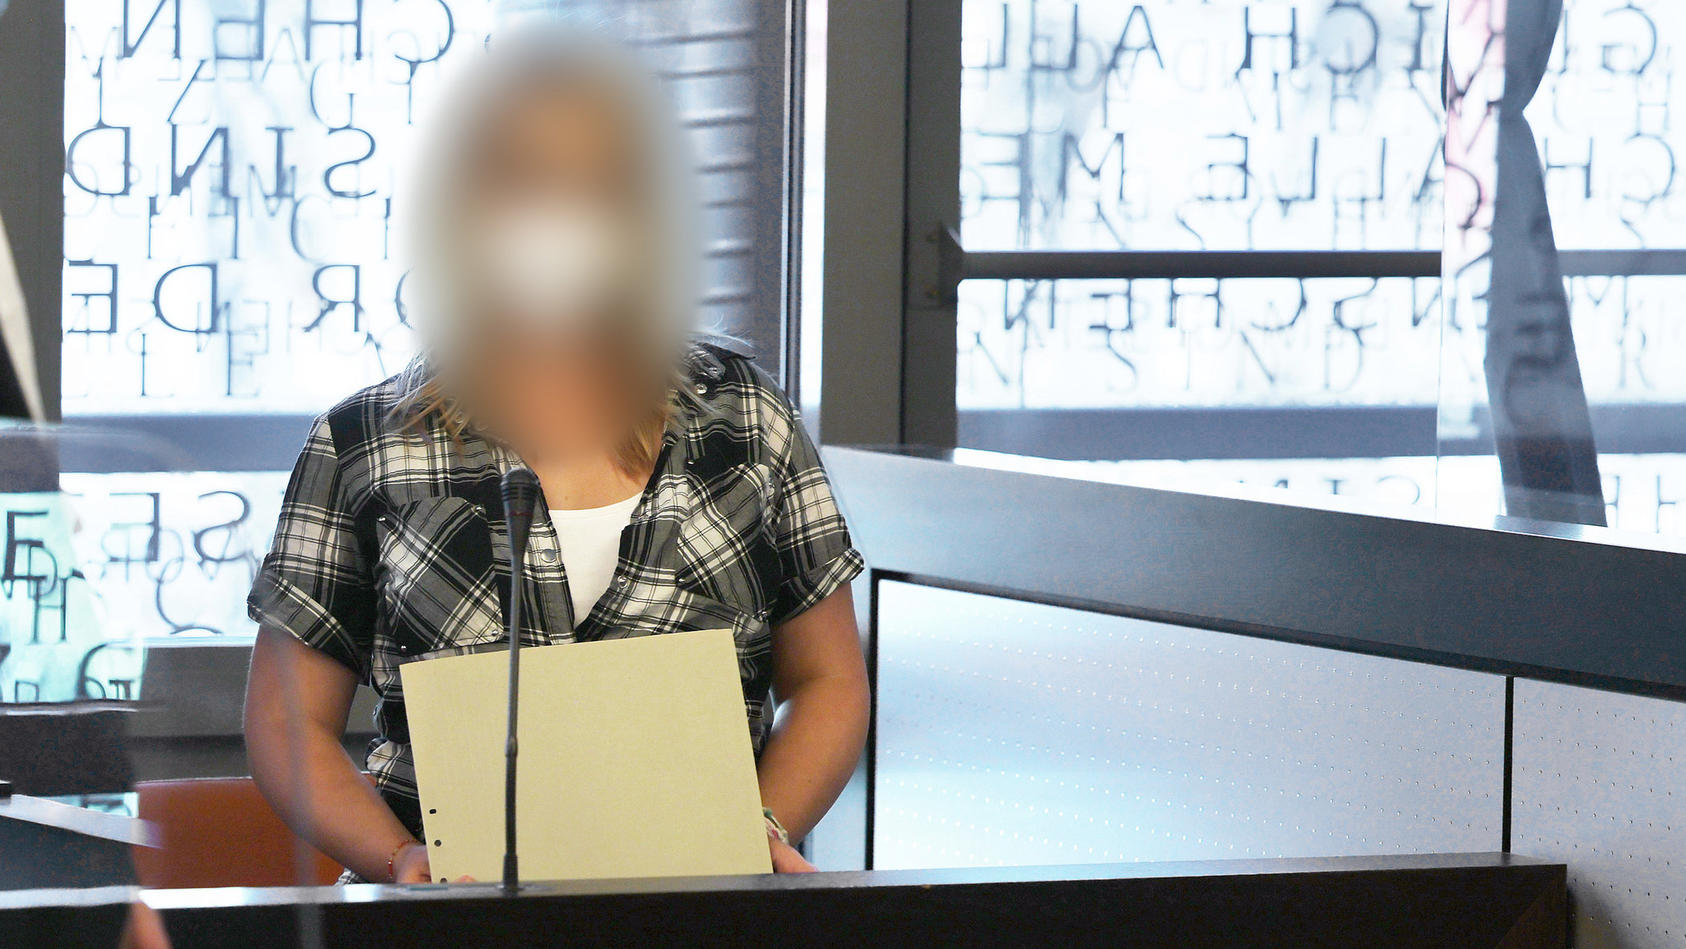 Die angeklagte Mutter (r) spricht mit einem ihrer Anwälte - in einer wegen Corona angebrachten Scheibe spiegelt sich das Wort "Gesetz" vom Fenster.